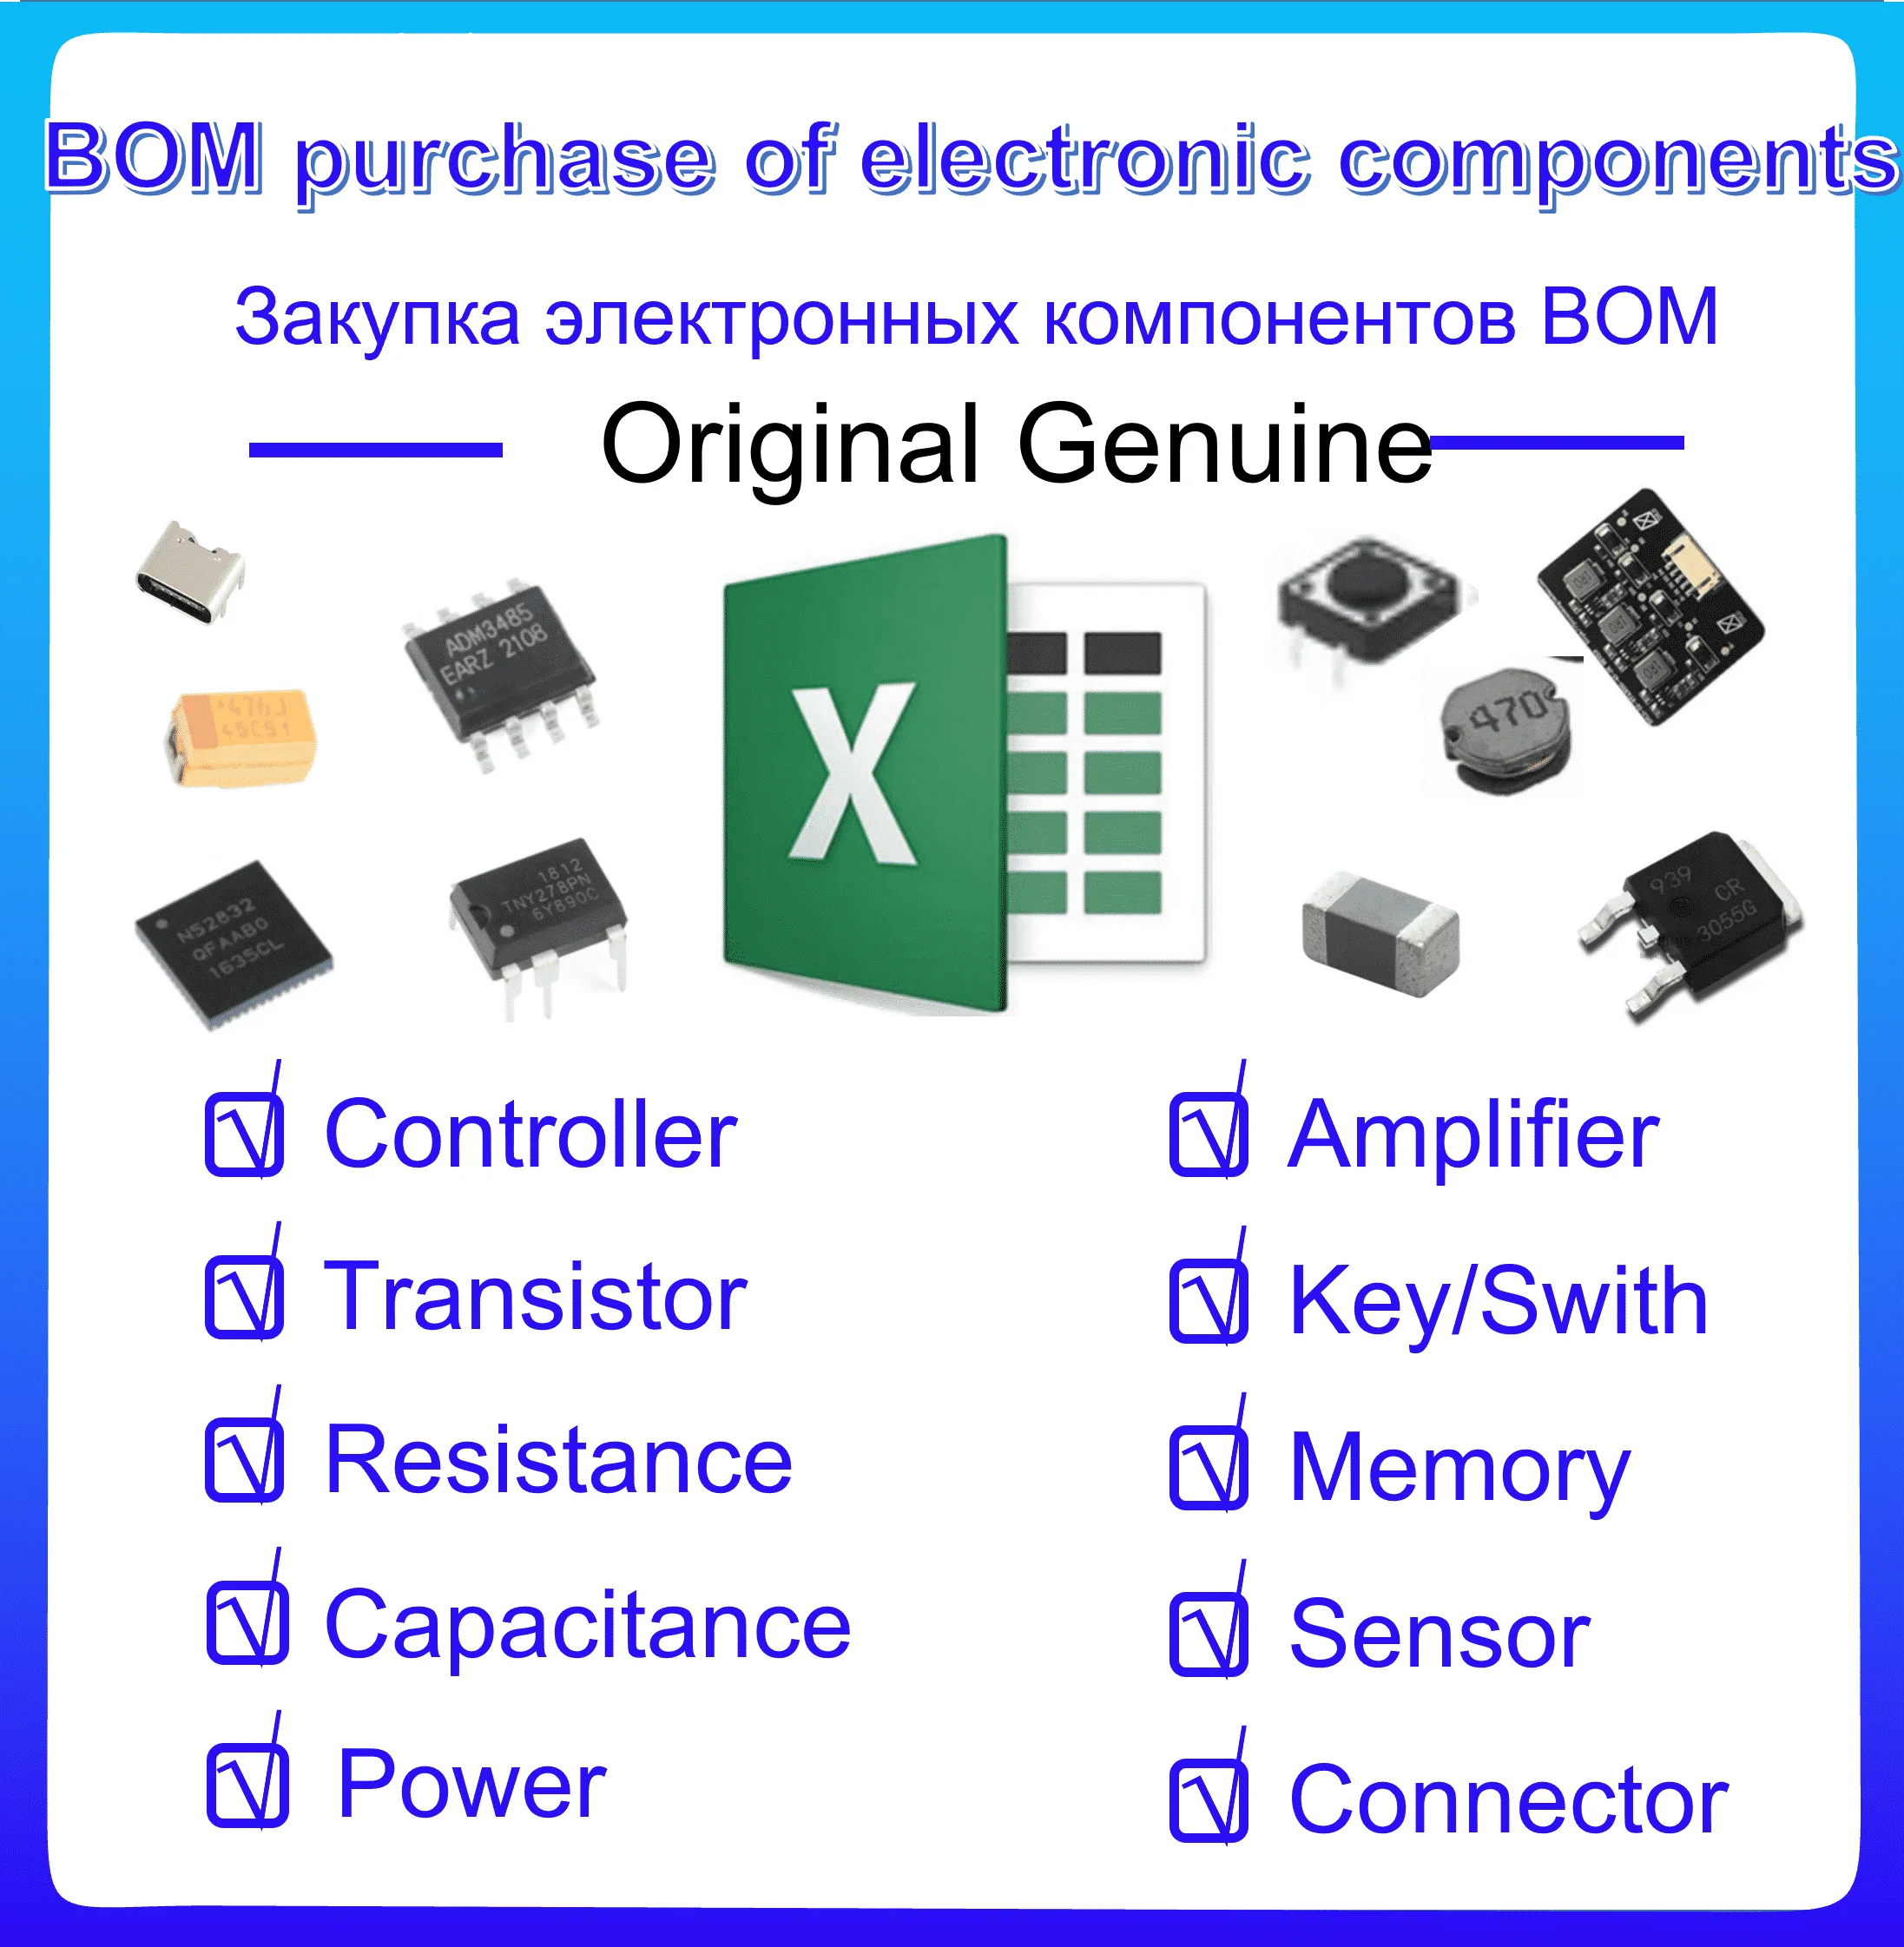 

Электронные компоненты BOM с одним контроллером, емкость, сопротивление, транзистор, интегрированный контур, датчик, интегрированный модуль W